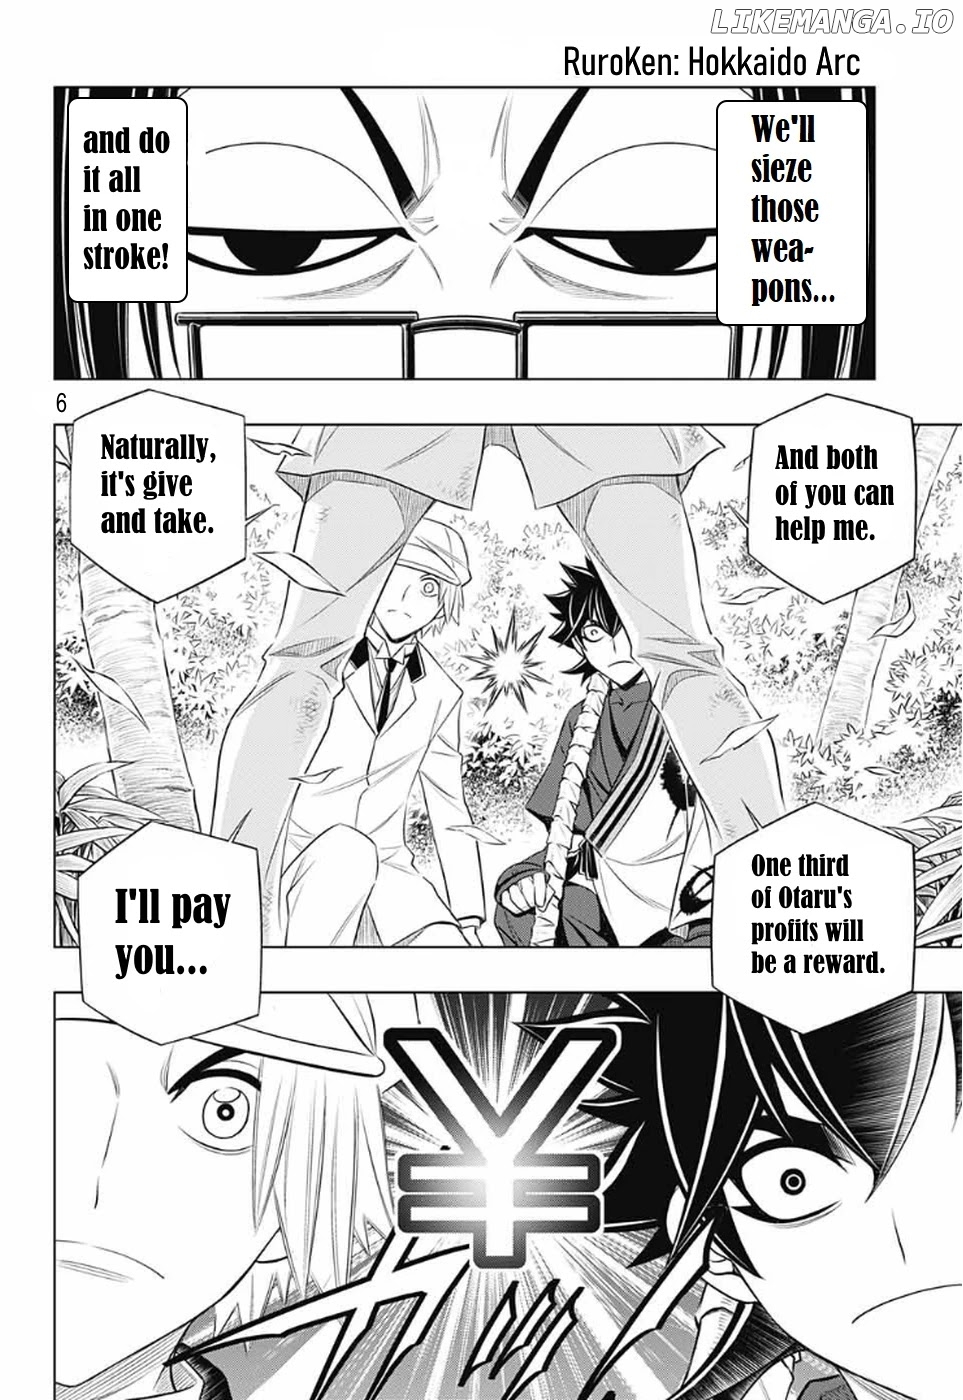 Rurouni Kenshin: Hokkaido Arc chapter 29 - page 6